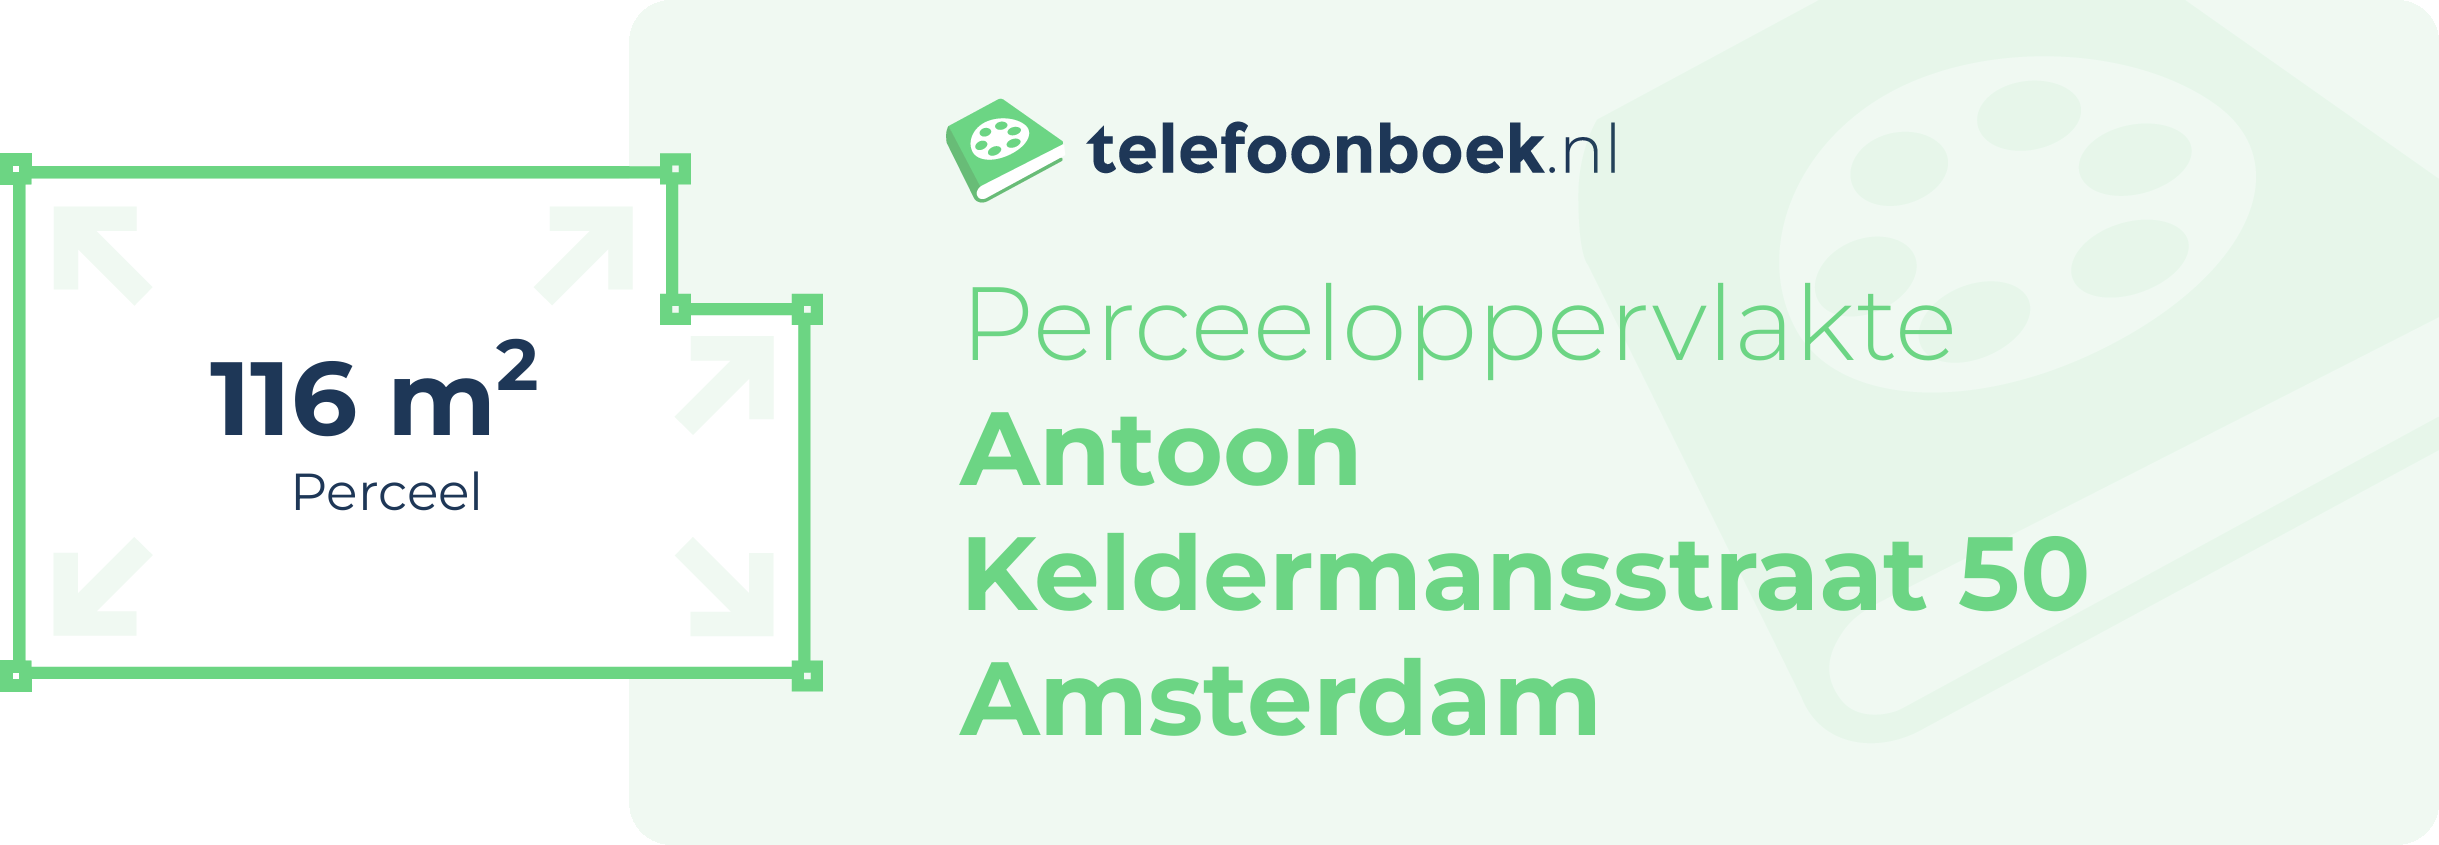 Perceeloppervlakte Antoon Keldermansstraat 50 Amsterdam